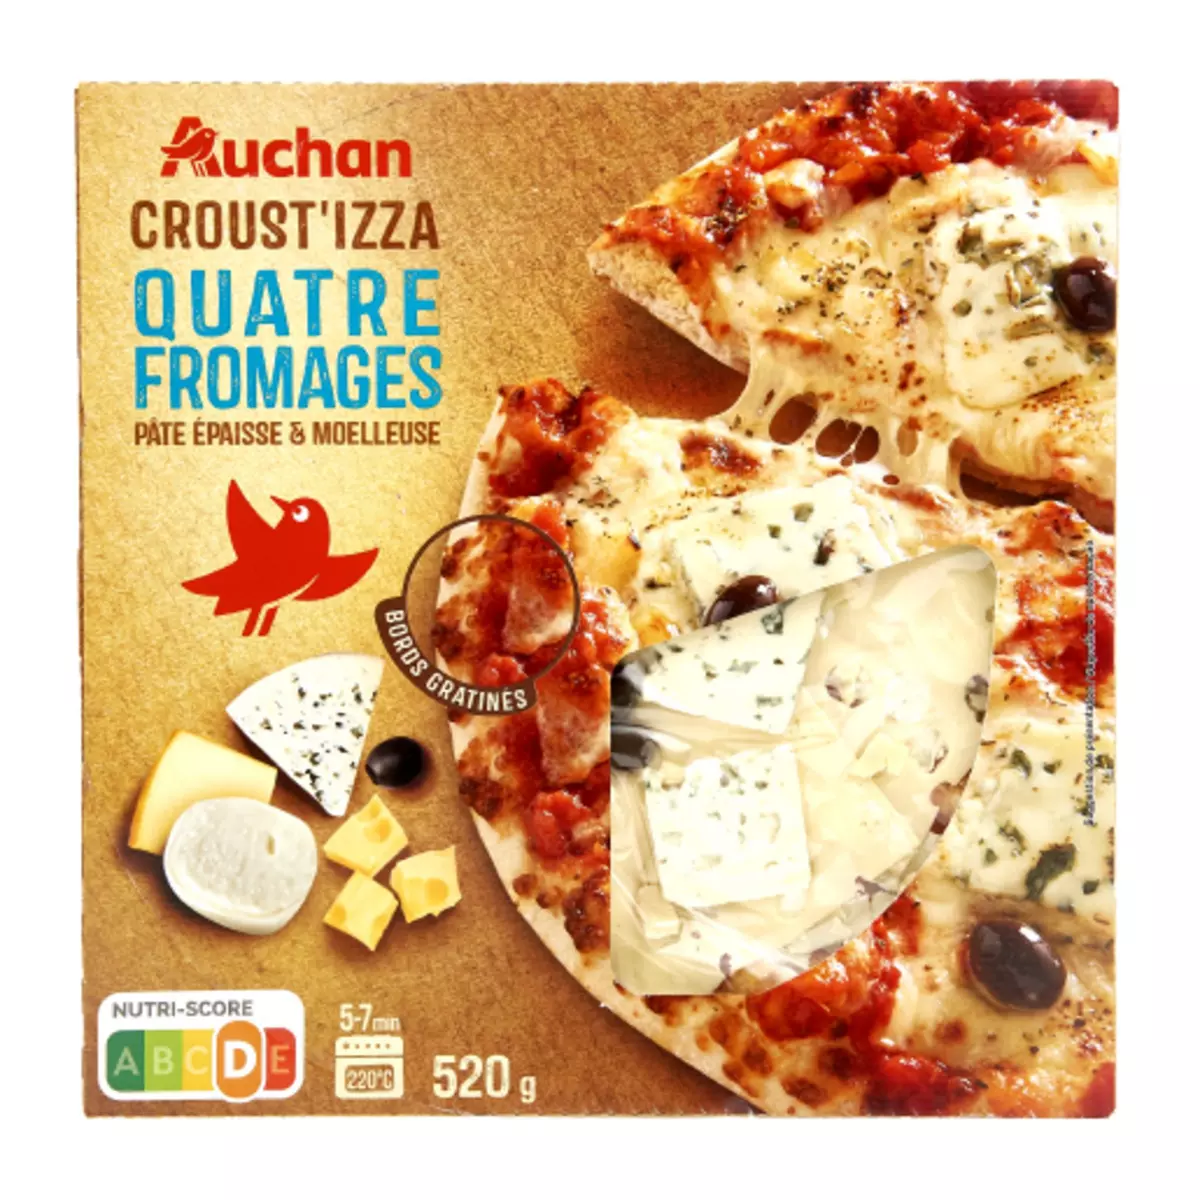 AUCHAN Croust izza 4 fromages 1 pièce 550g